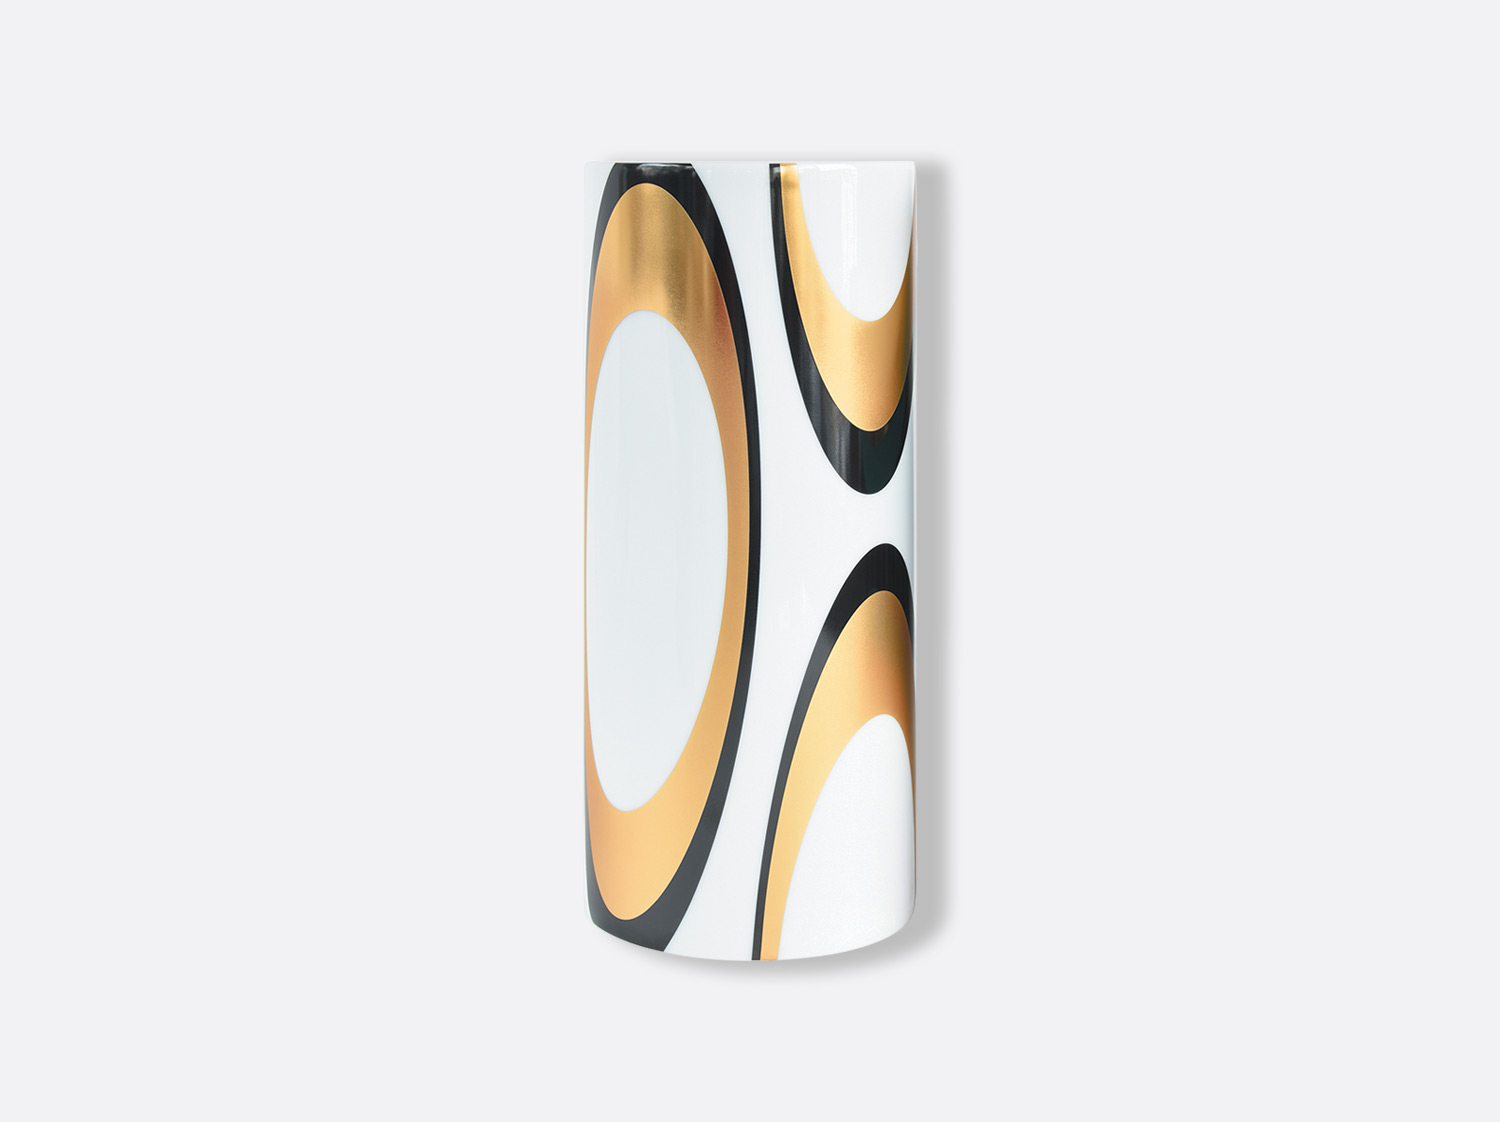 White large vase 22.4 Kintsugi - Sarkis | Bernardaud Porcelain